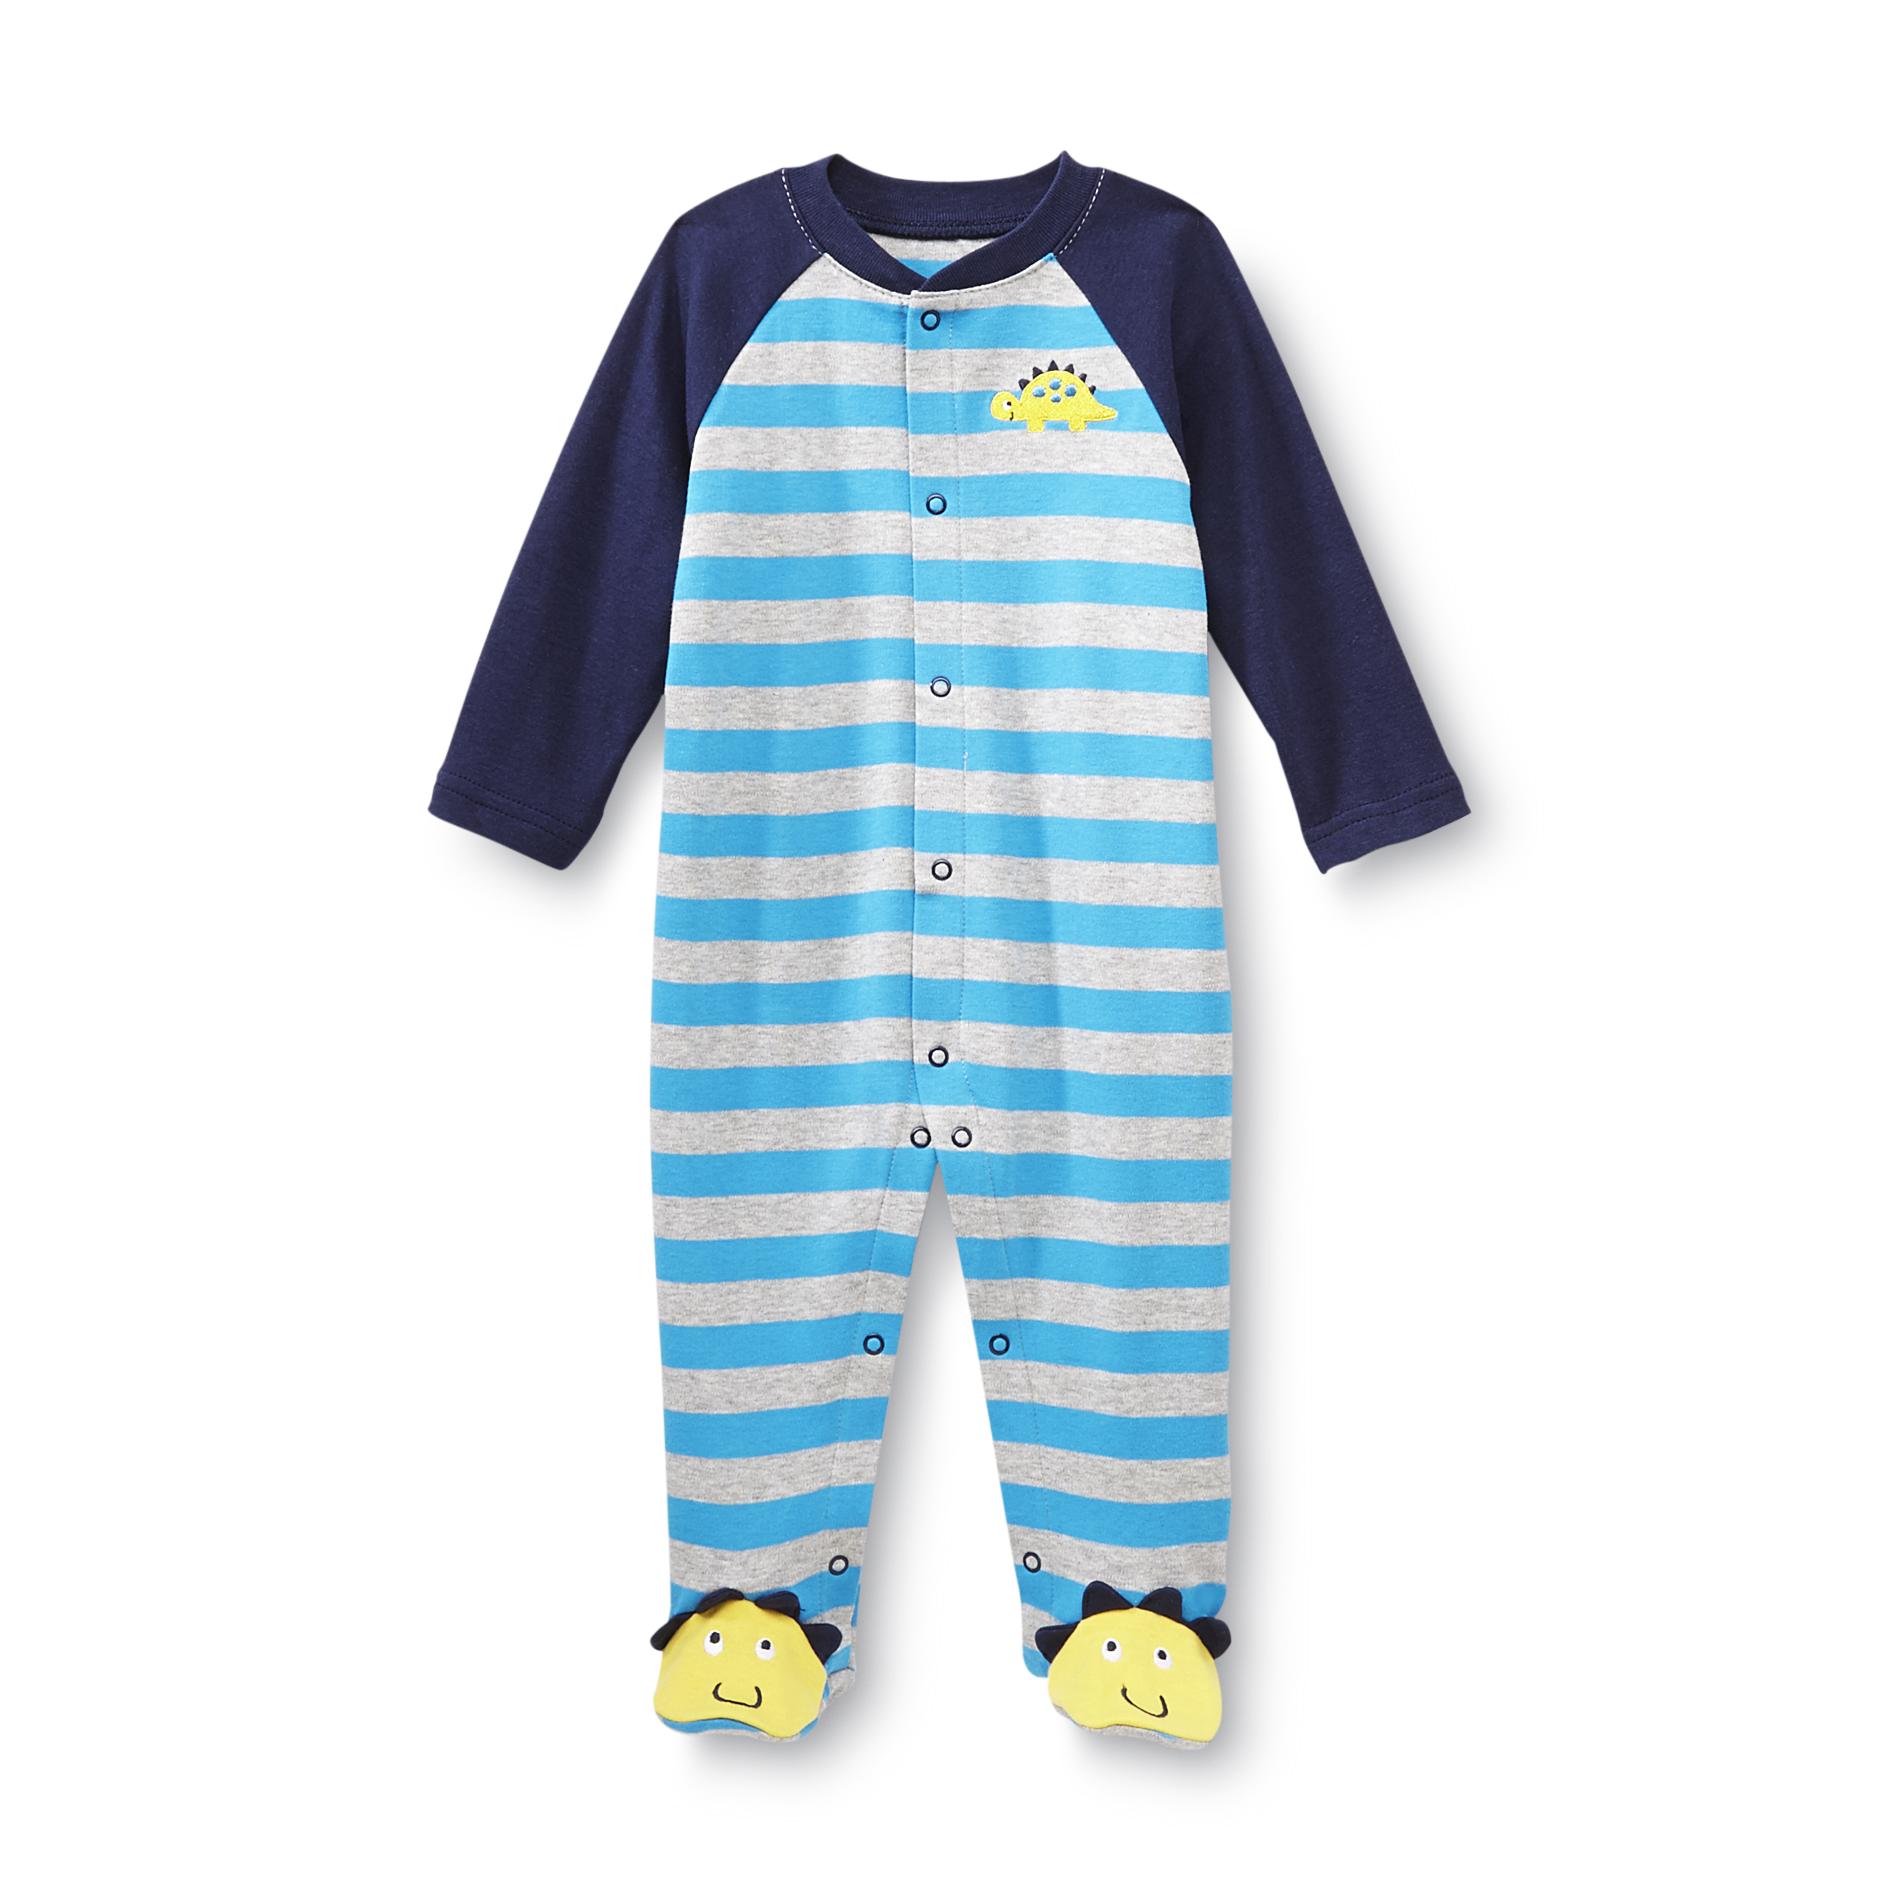 Small Wonders Newborn Boy's Sleeper Pajamas - Dinosaur